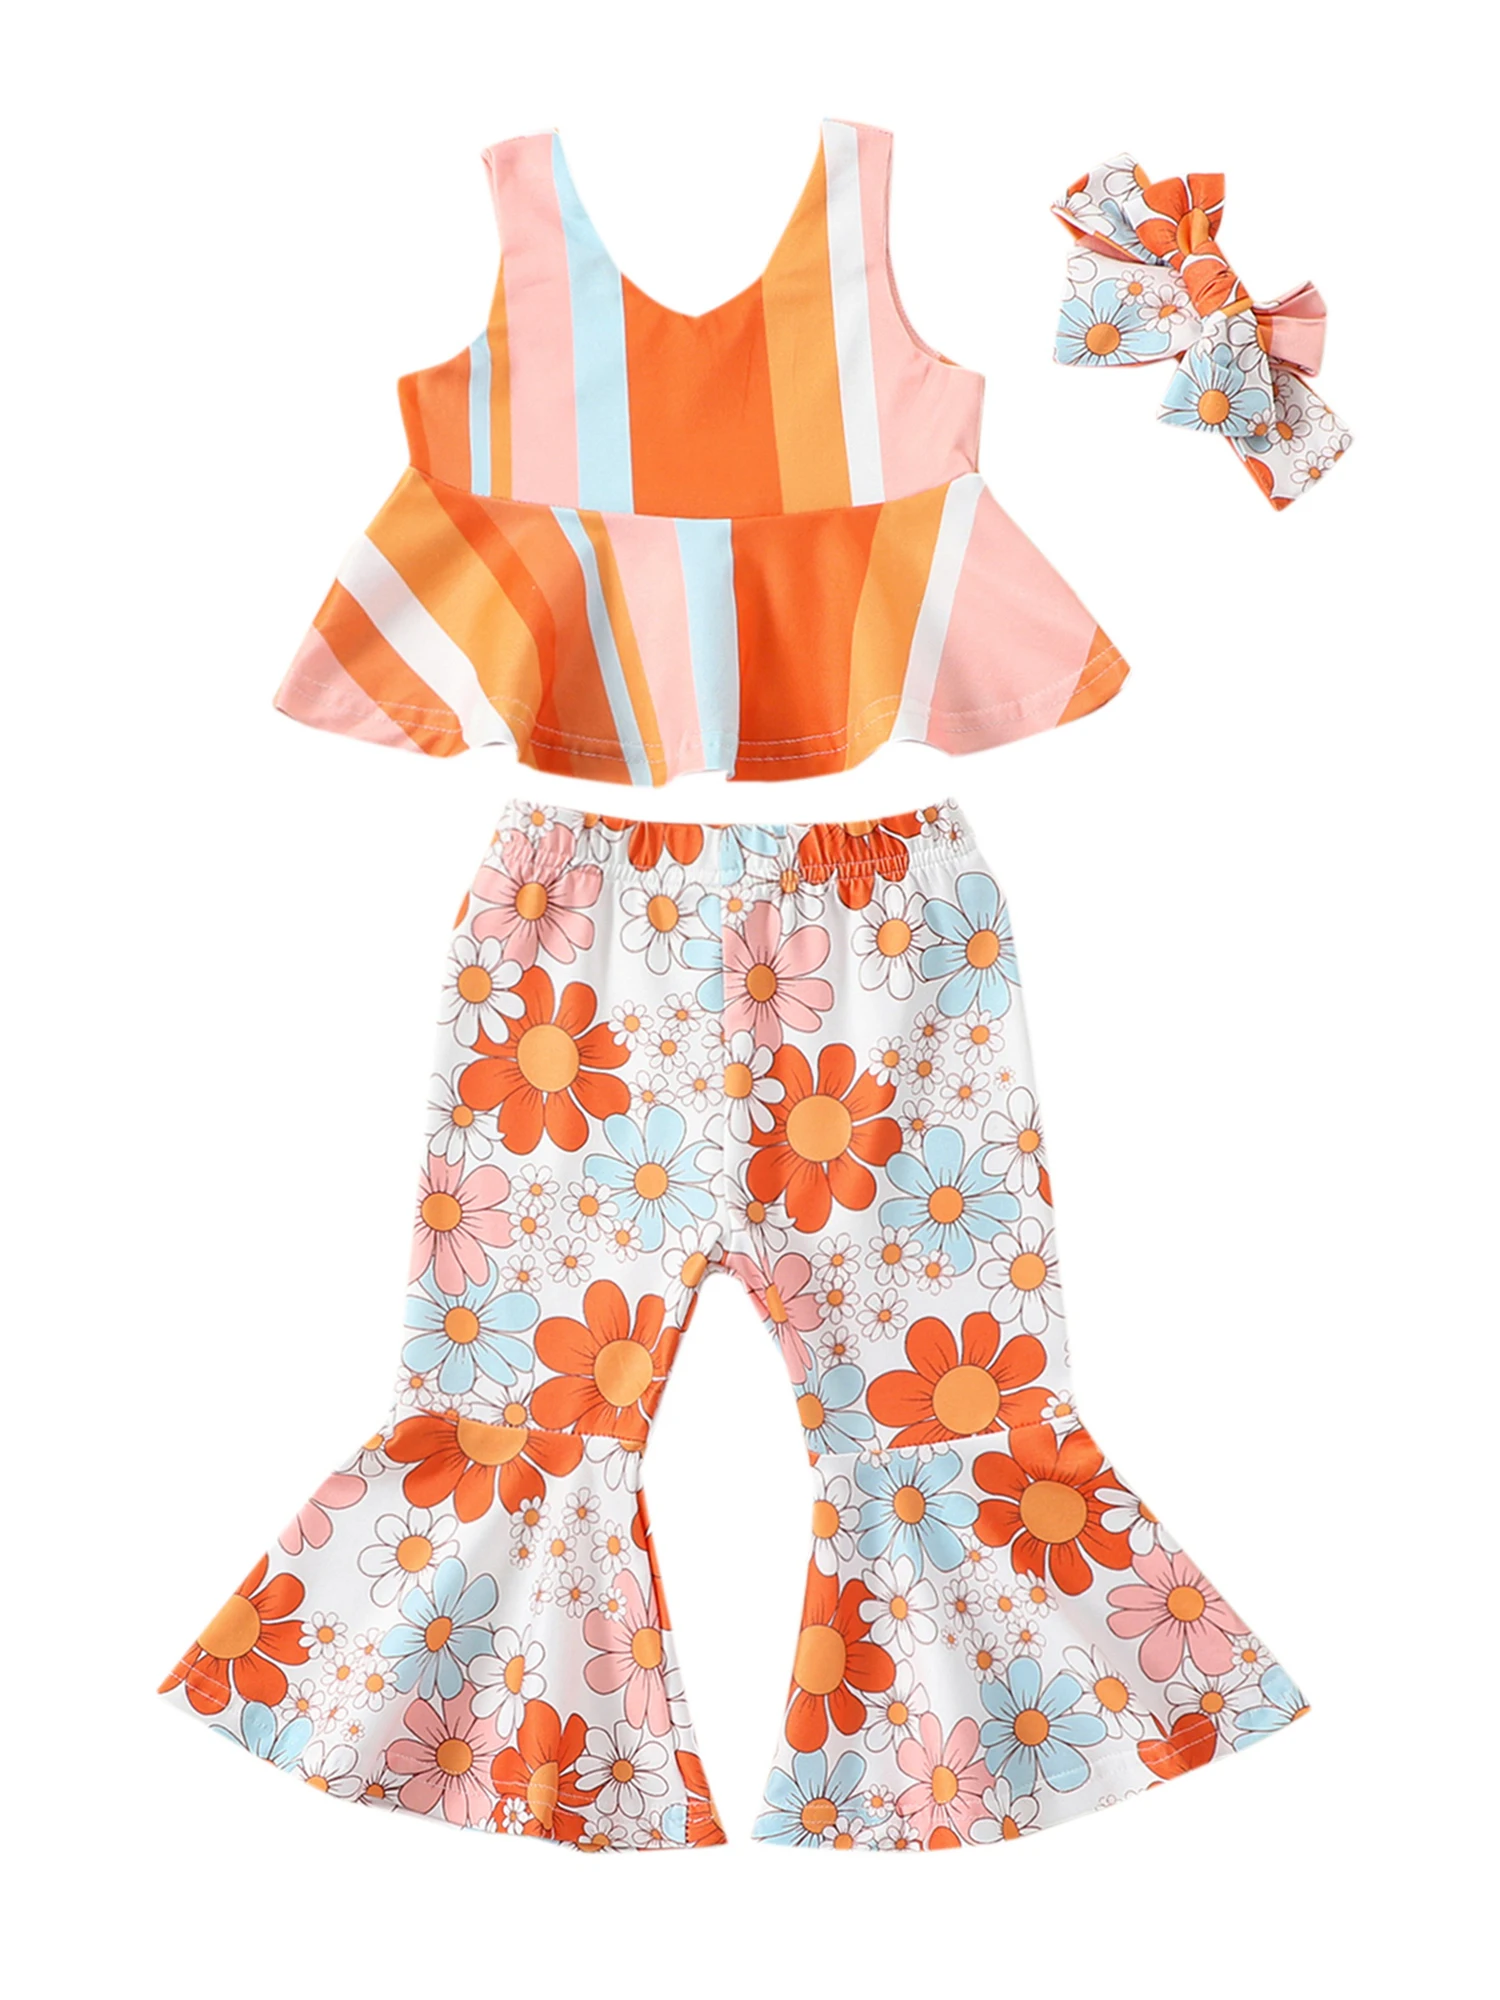 

Летняя одежда для маленьких девочек, укороченный топ с лямкой на шее и цветами, радужные расклешенные штаны, штаны с колокольчиками, милый наряд в стиле бохо для дня рождения